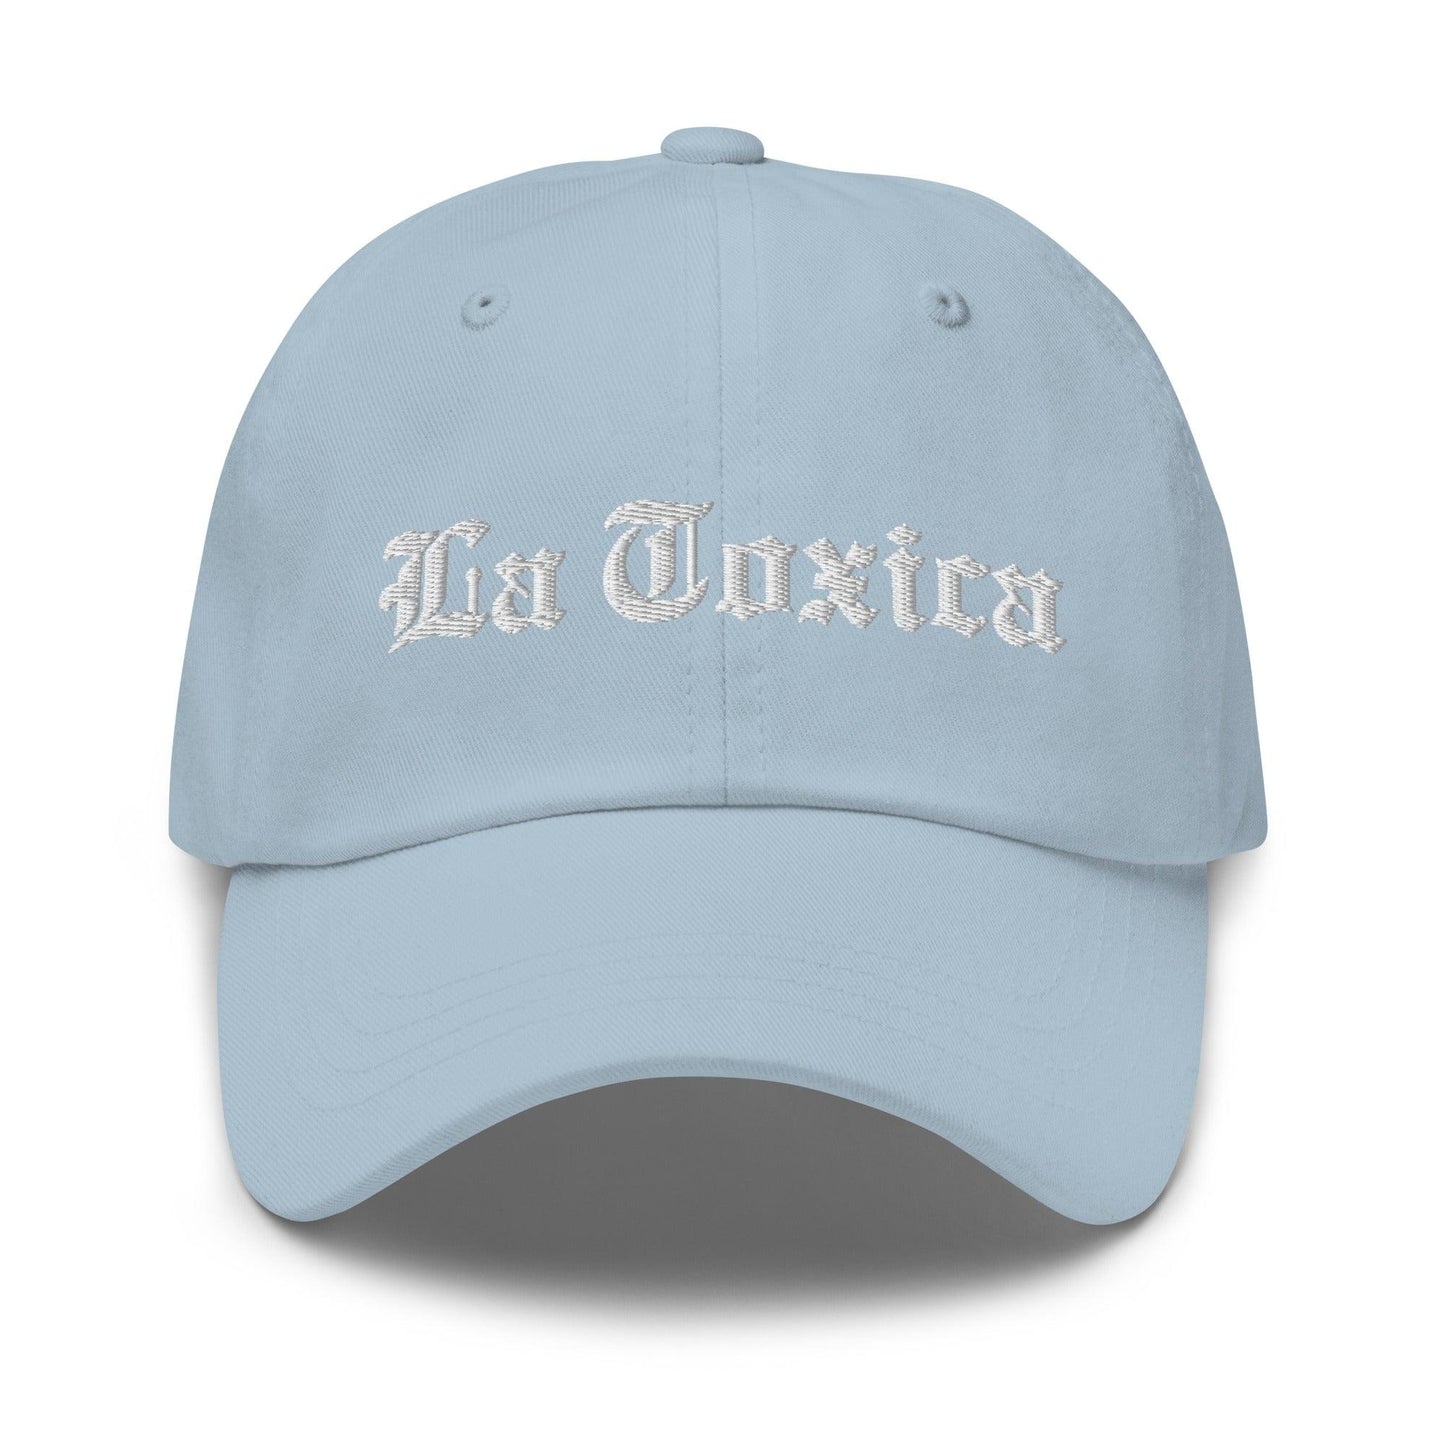 La Toxica OG Old English Dad Hat Light Blue